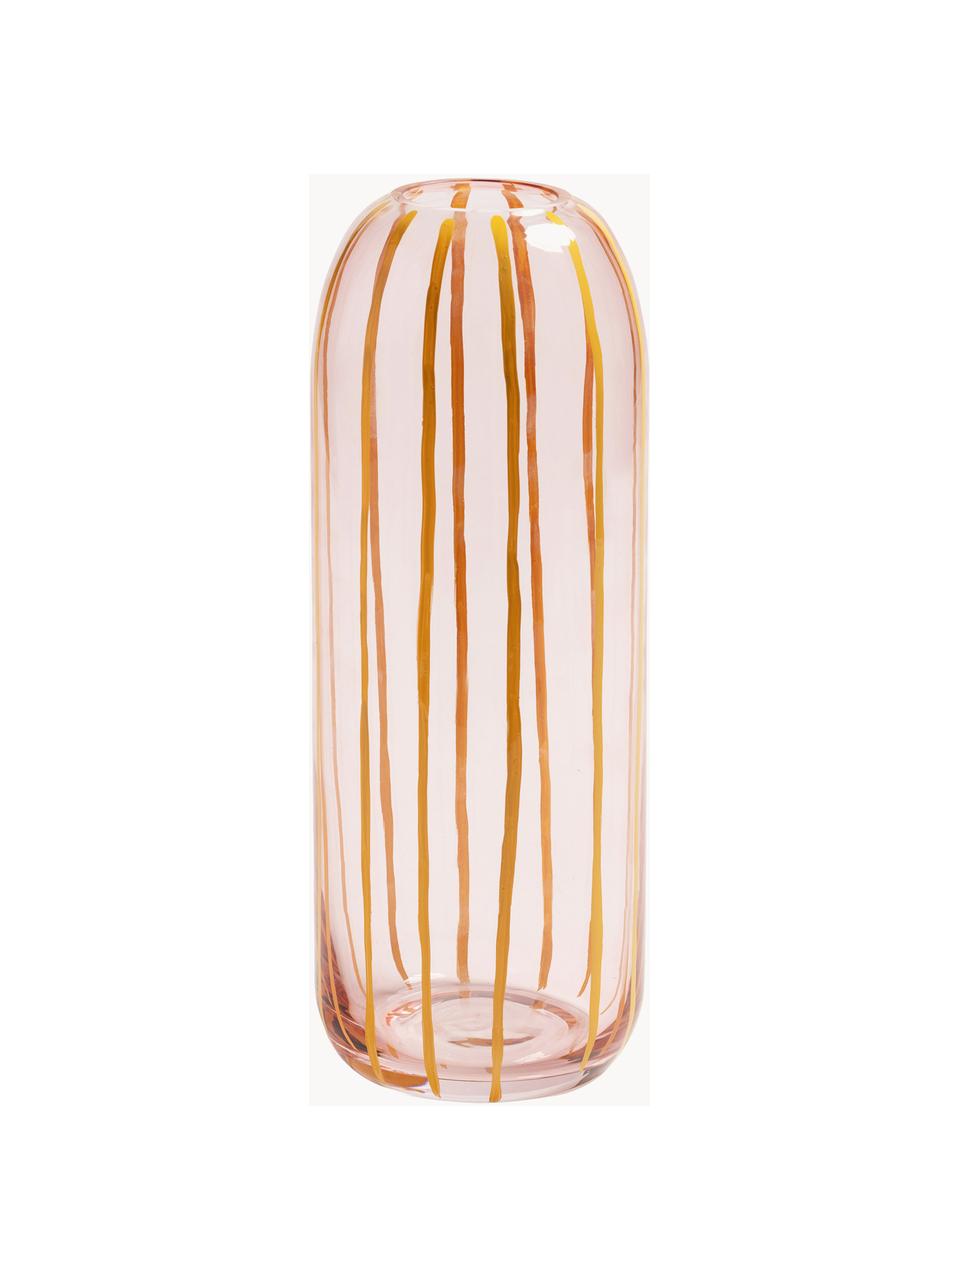 Jarrón artesanal de vidrio Sweep, Vidrio, Amarillo, naranja, Ø 10 x Al 27 cm